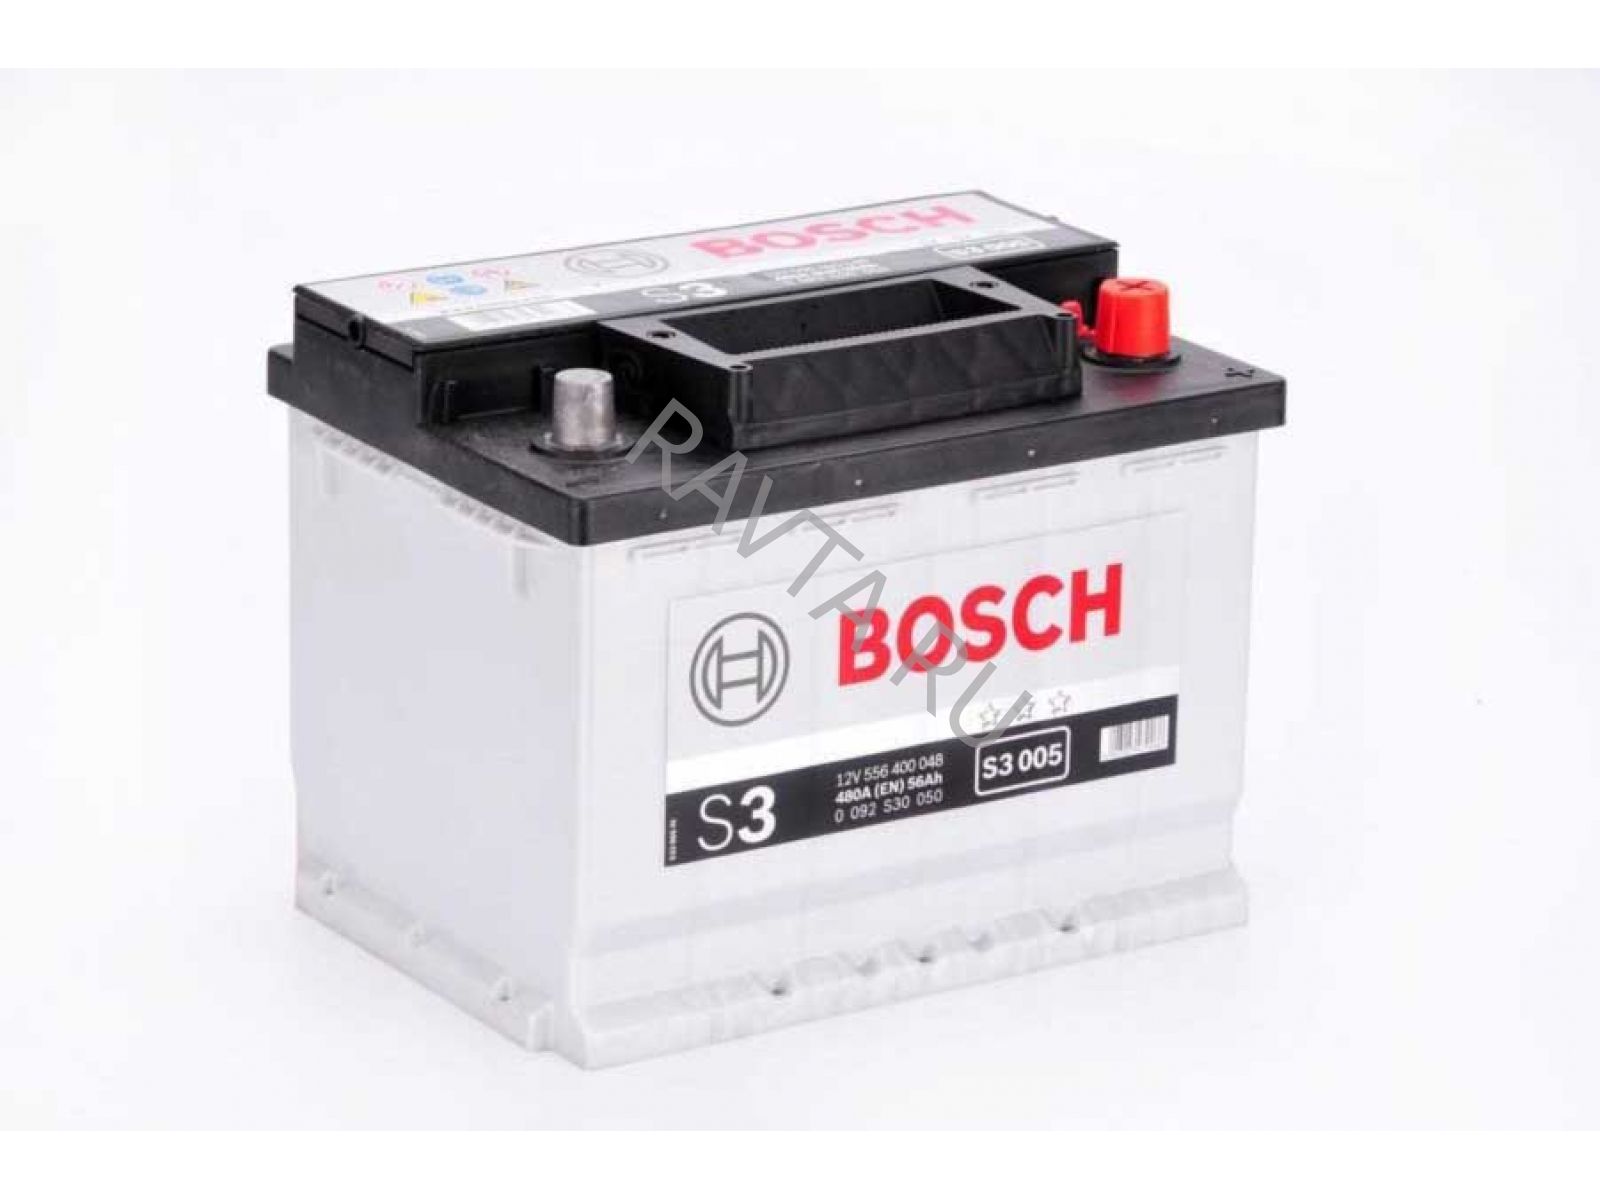 3 64 92. Bosch s3 007 70r 640a. Bosch s3 008. Аккумулятор 70 а/ч "Bosch" 640a (Обратная полярность) s3 007 (278*175*175). Аккумулятор Bosch s3 007.